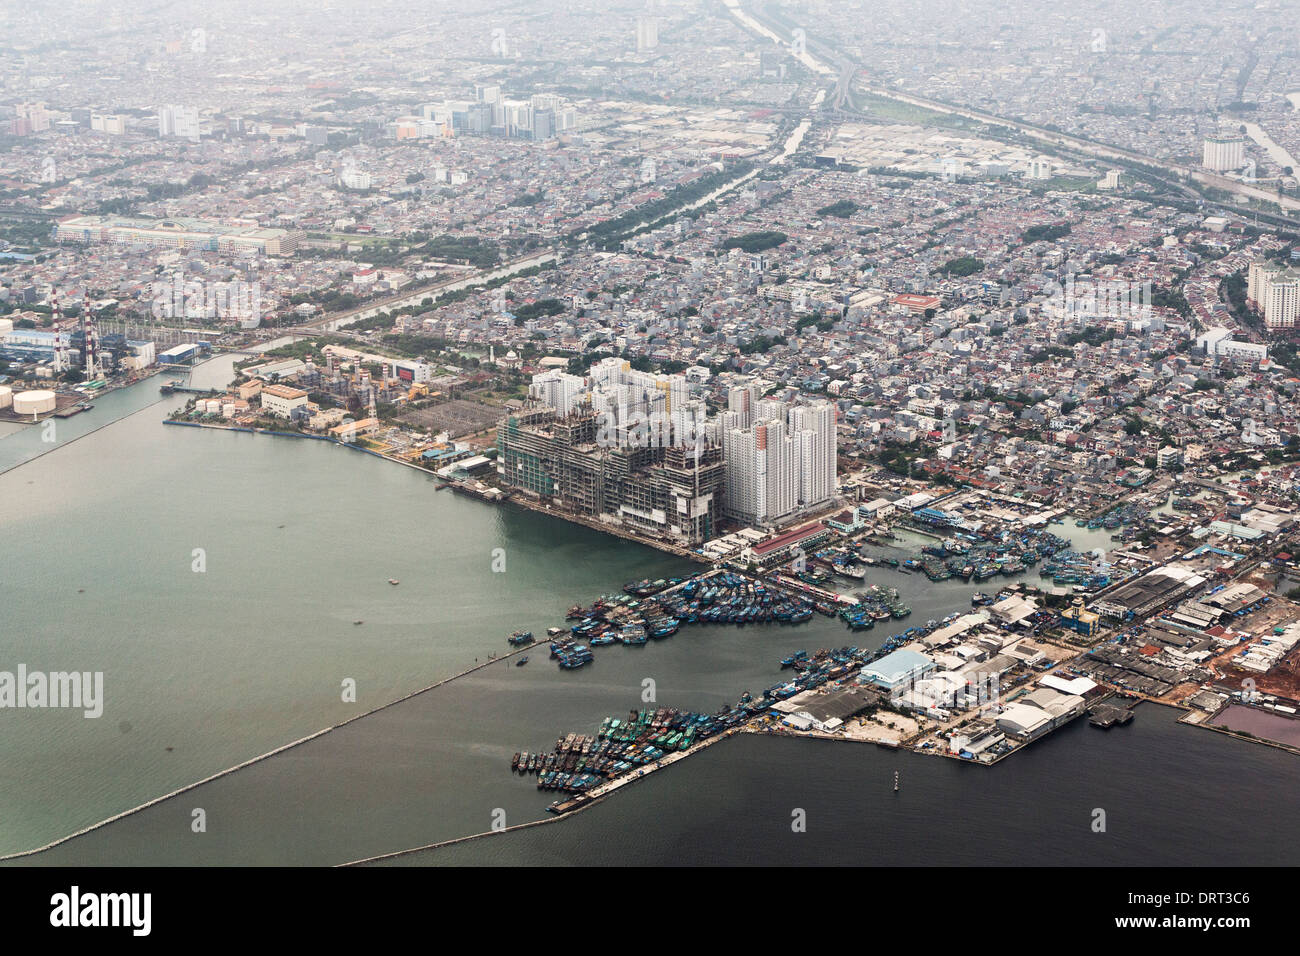 Vue aérienne de la Pluit zone avec le port de Muara Angke sur la droite de la photo, Jakarta, Indonésie Banque D'Images